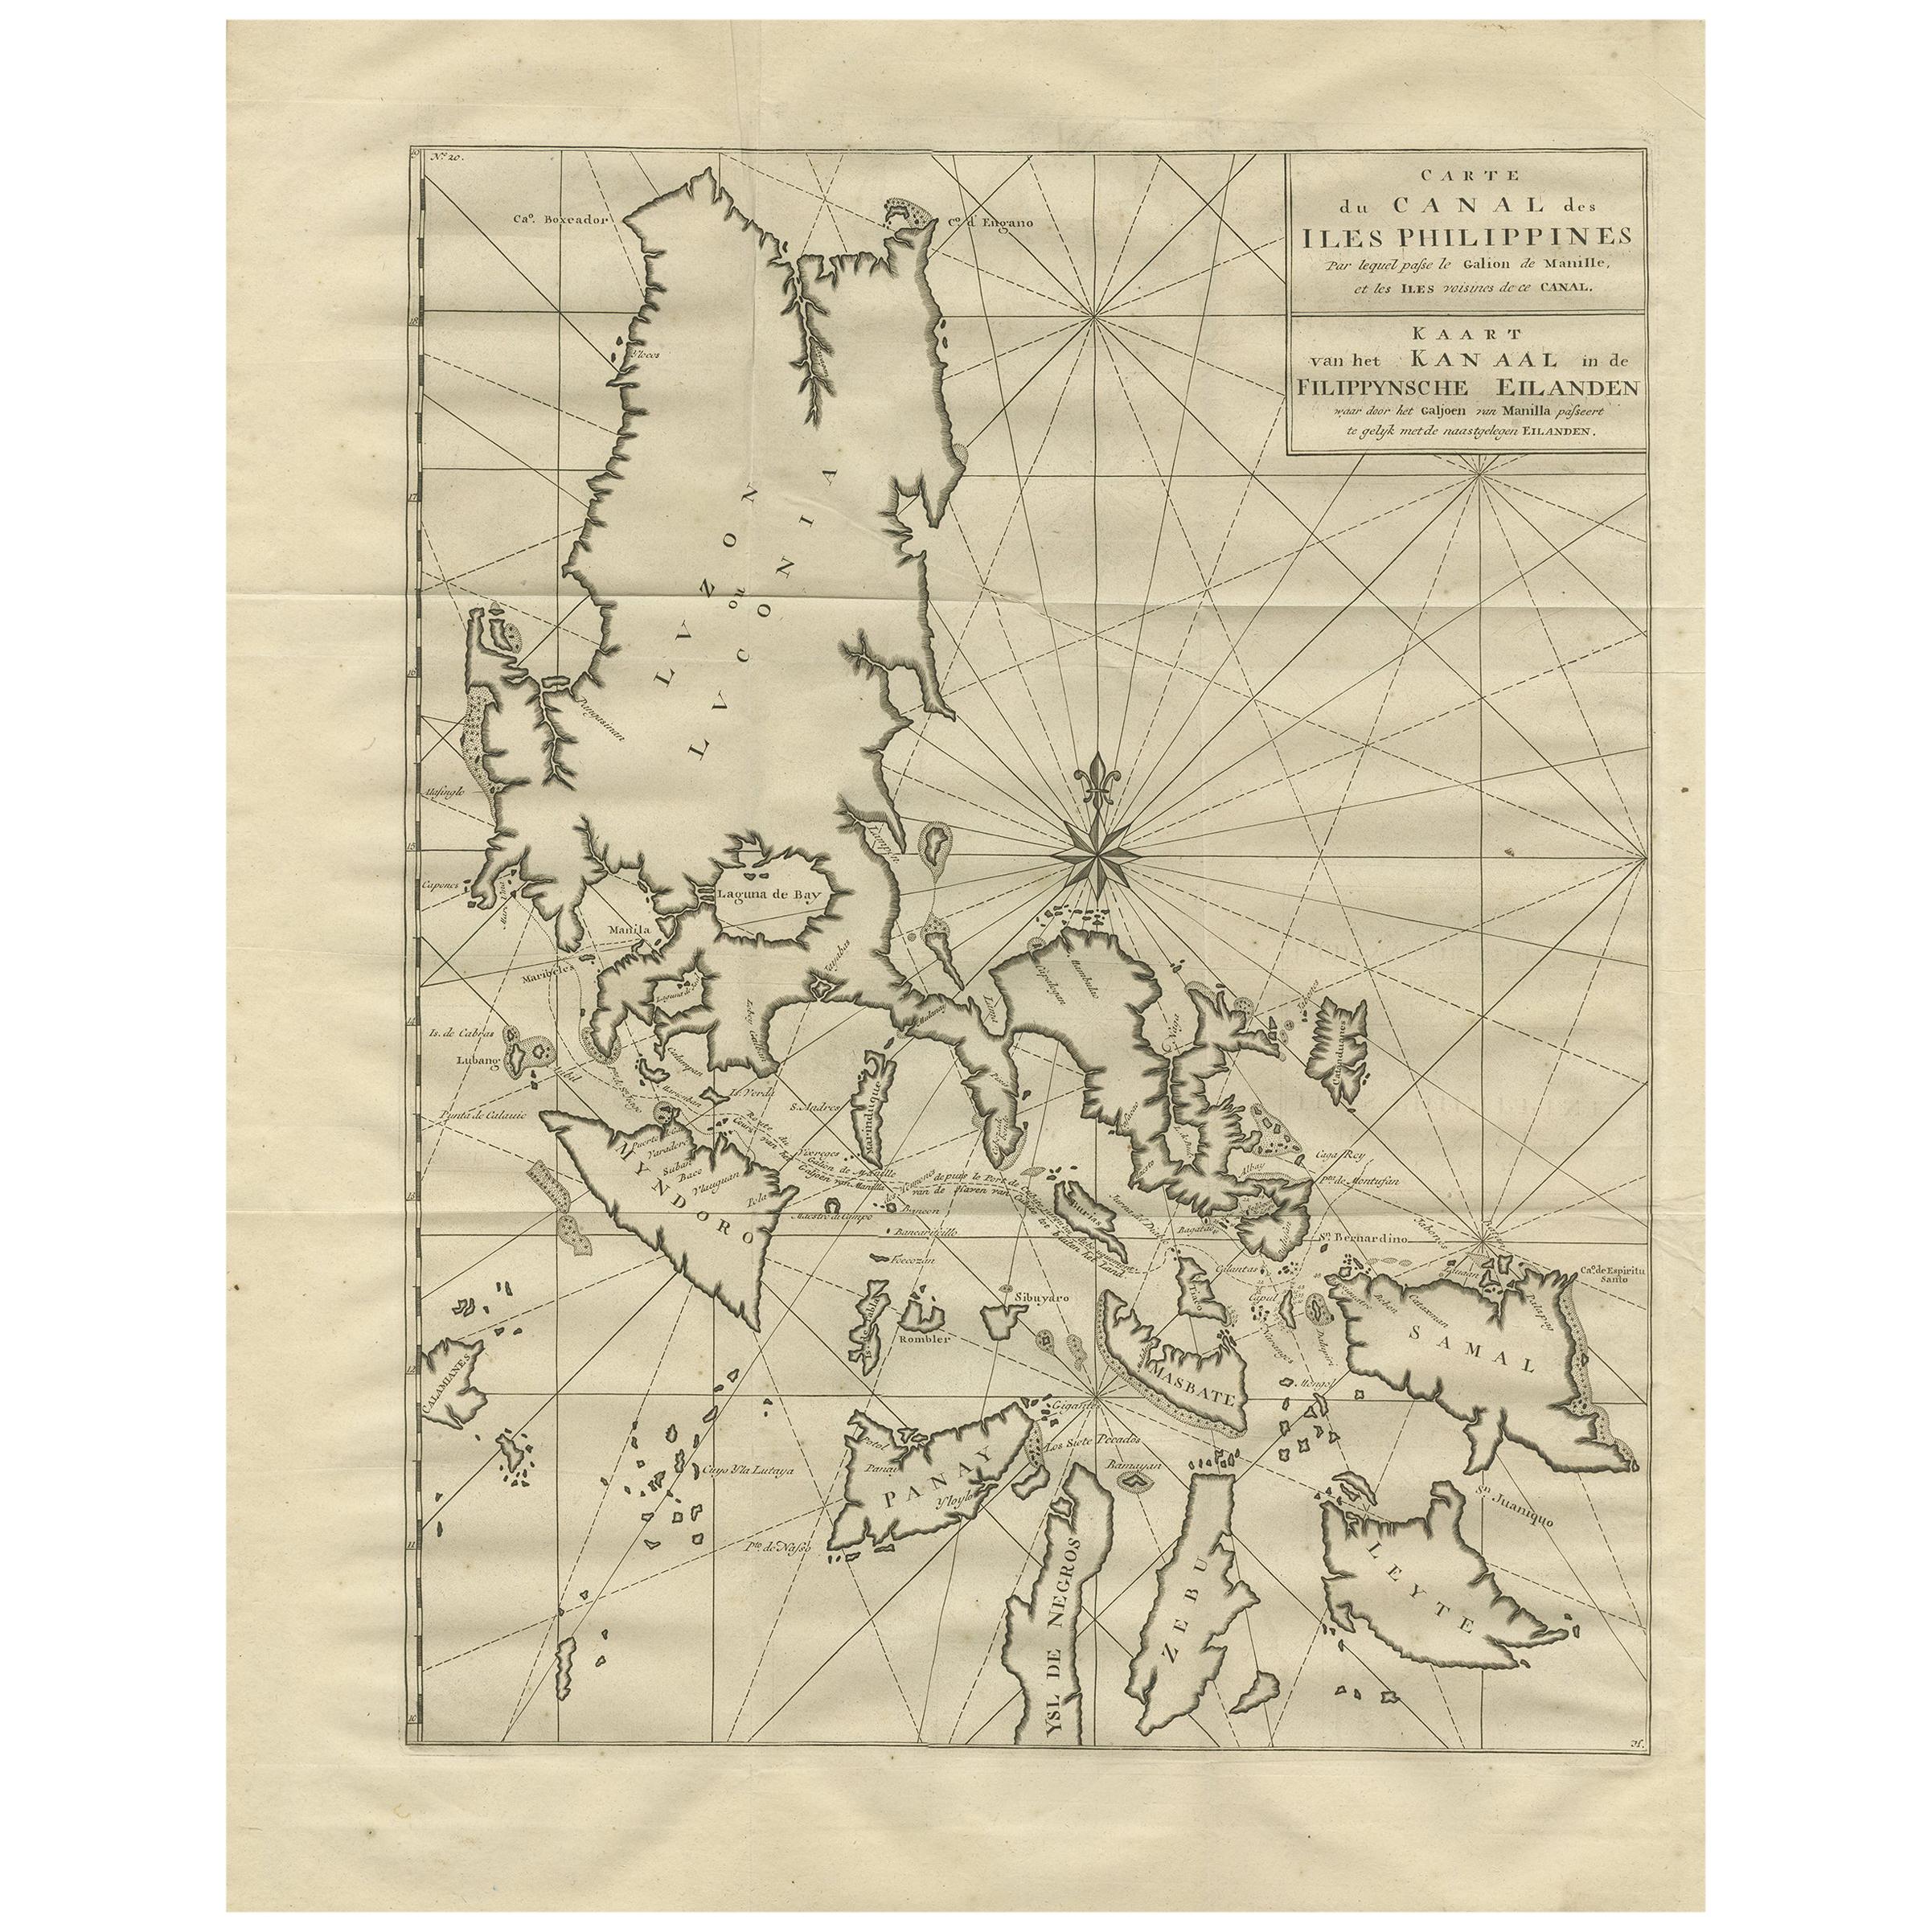 Carte ancienne des Philippines par Anson (1749)